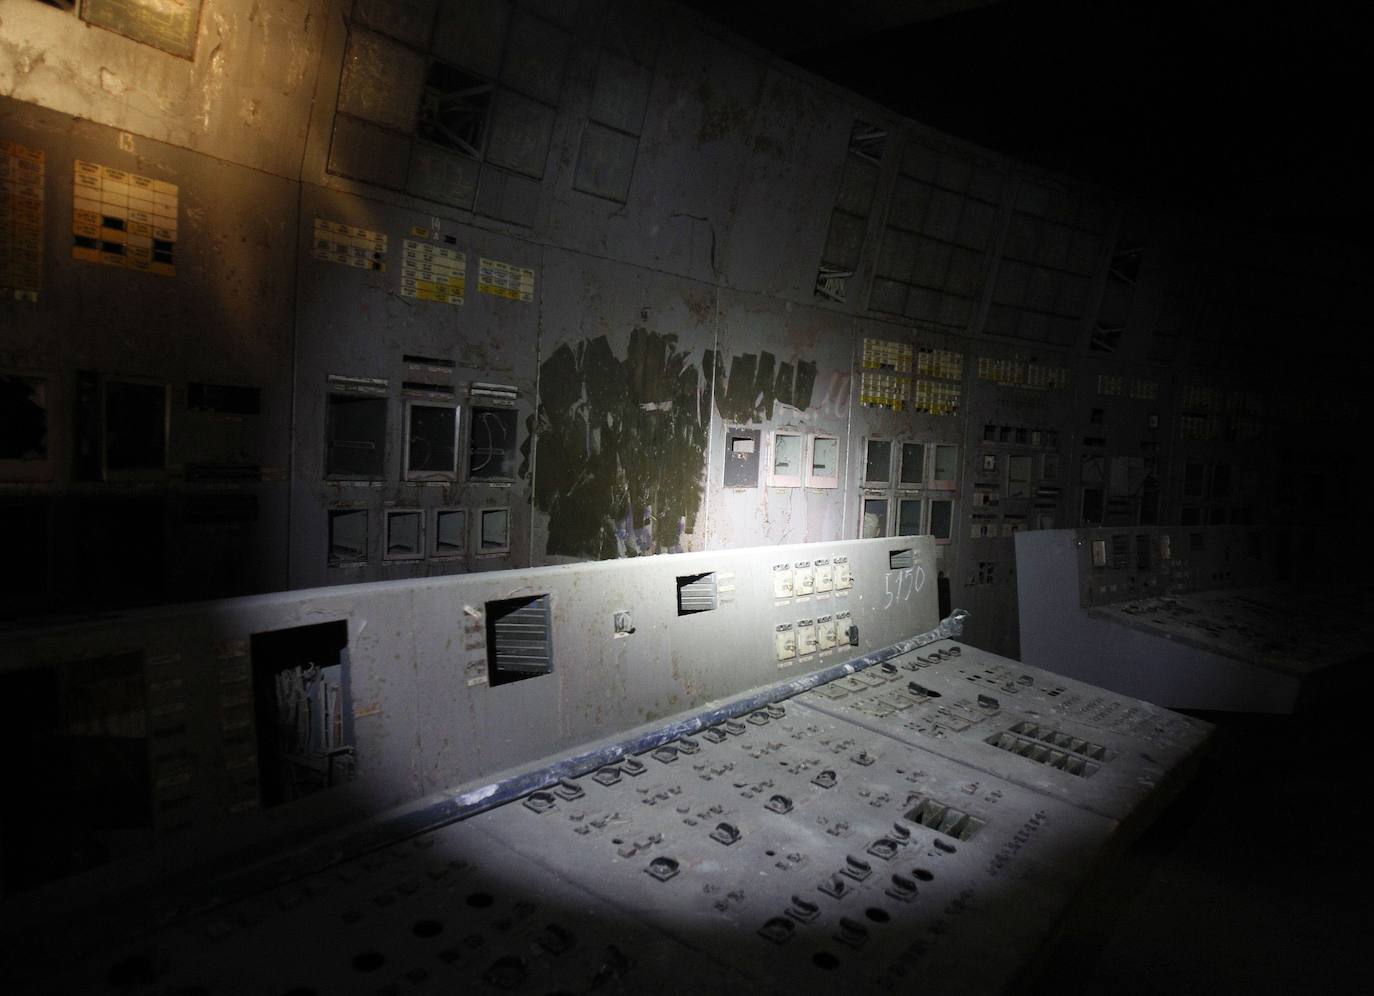 El mayor desastre nuclear de la historia tuvo lugar hace 34 años en Chernóbil. De acuerdo con evaluaciones oficiales, la explosión ocurrida en la madrugada del 26 de abril de 1986 esparció hasta 200 toneladas de material con una radiactividad de 50 millones de curies, equivalente a 500 bombas atómicas como la lanzada en Hiroshima. La llamada 'zona de exclusión' es un área que se extiende en un radio de 30 kilómetros alrededor de la central nuclear cuyo reactor número 4 saltó por los aires. Hasta diciembre de 2010, a la esta zona solo podía acceder personal autorizado, científicos, médicos y, con la debida autorización, periodistas. Ahora se organizan hasta viajes turísticos. 